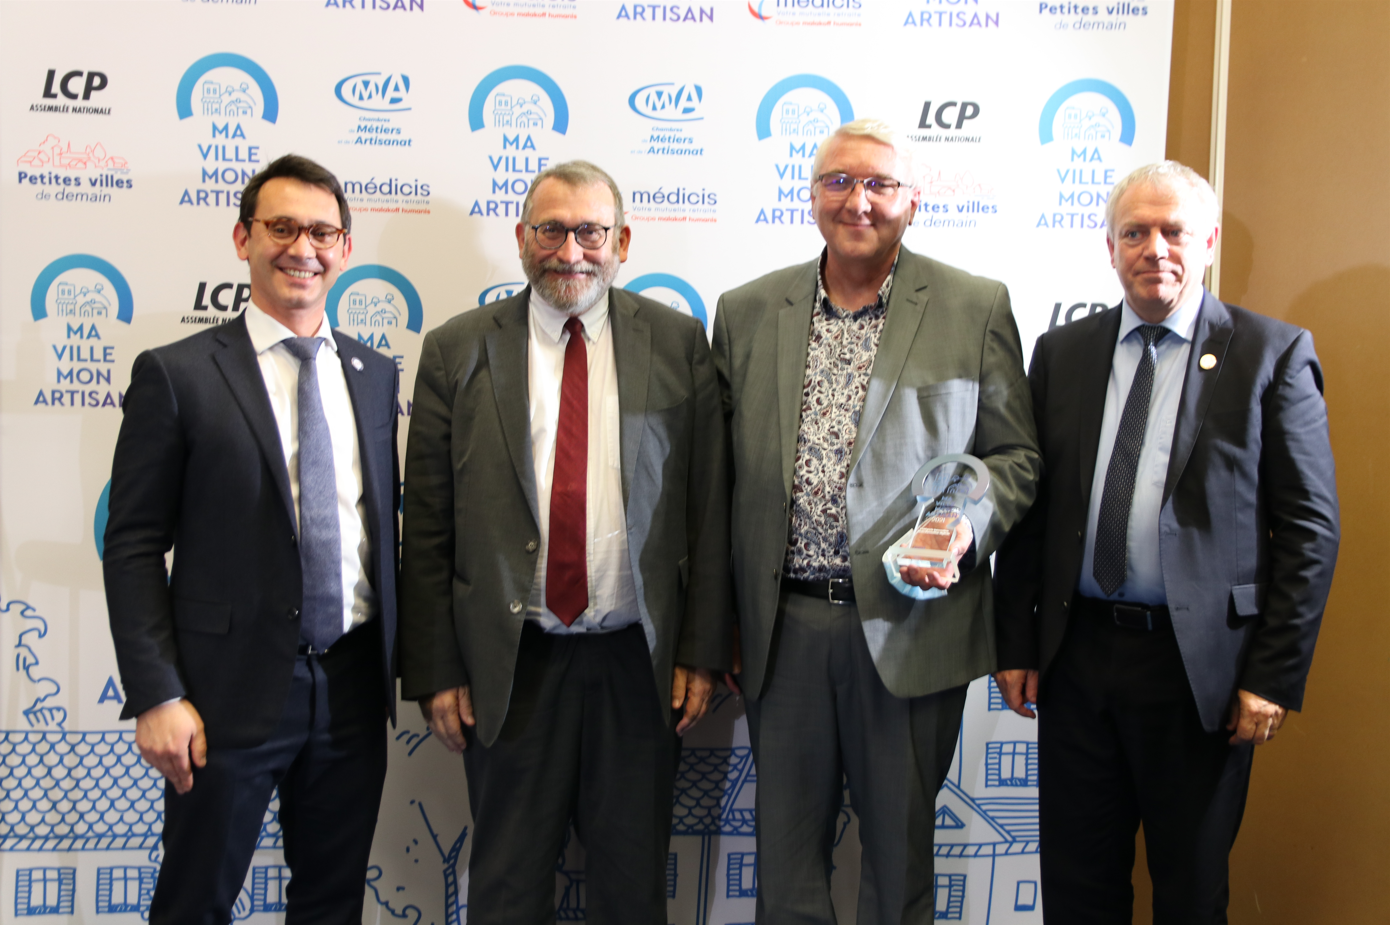 La CCST reçoit le prix "Ma Ville Mon Artisan" de la CMA France 